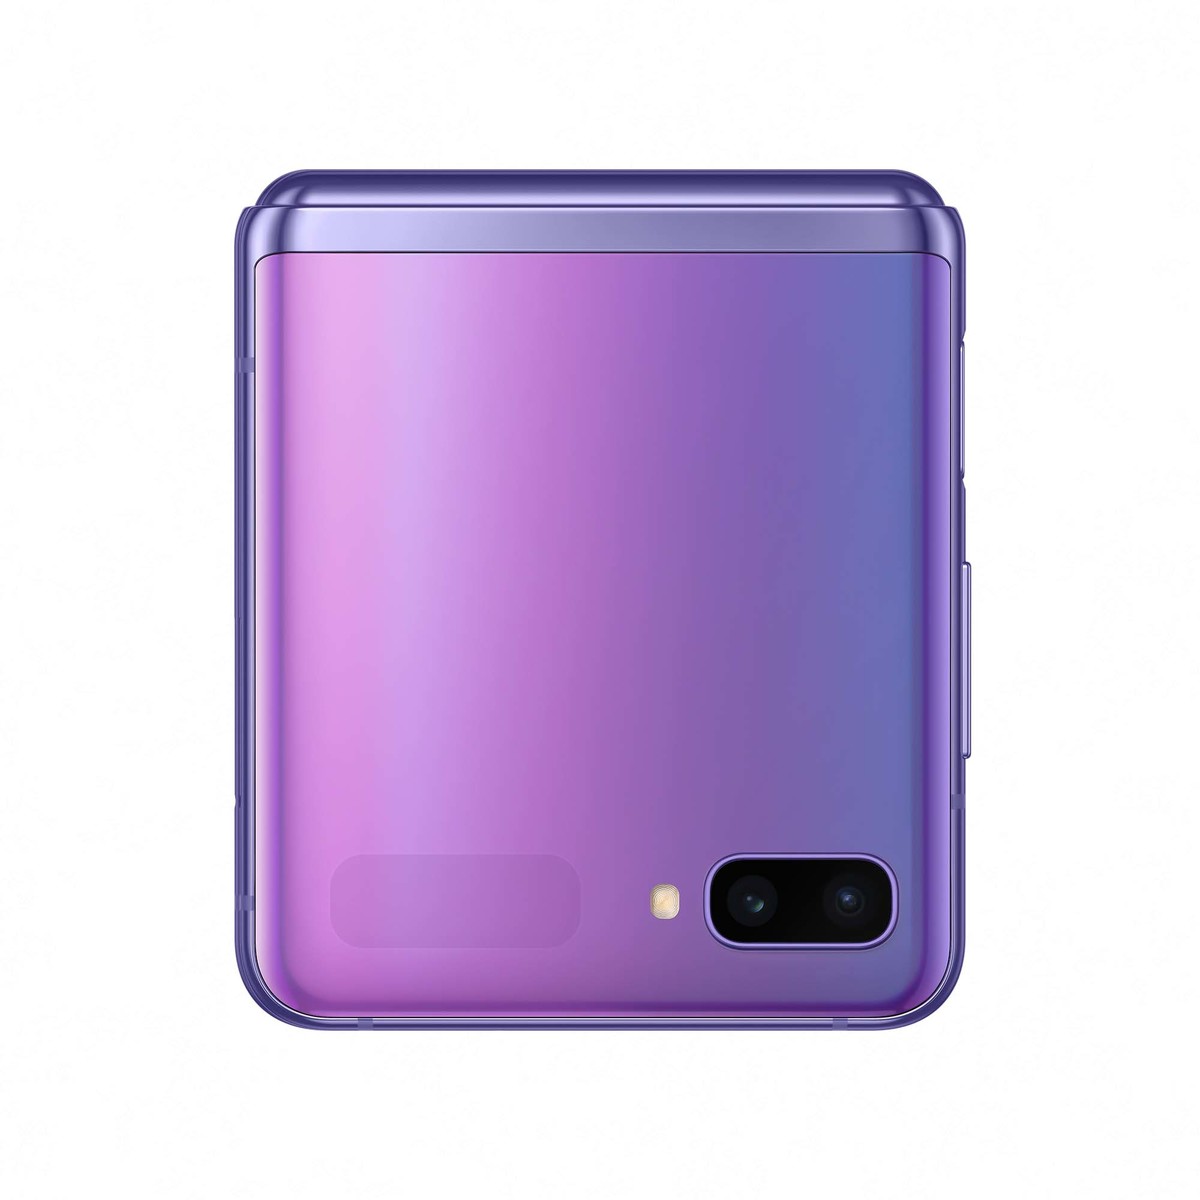 Buy Samsung Galaxy Z Flip F700 256gb Purple Online Lulu Hypermarket Qatar